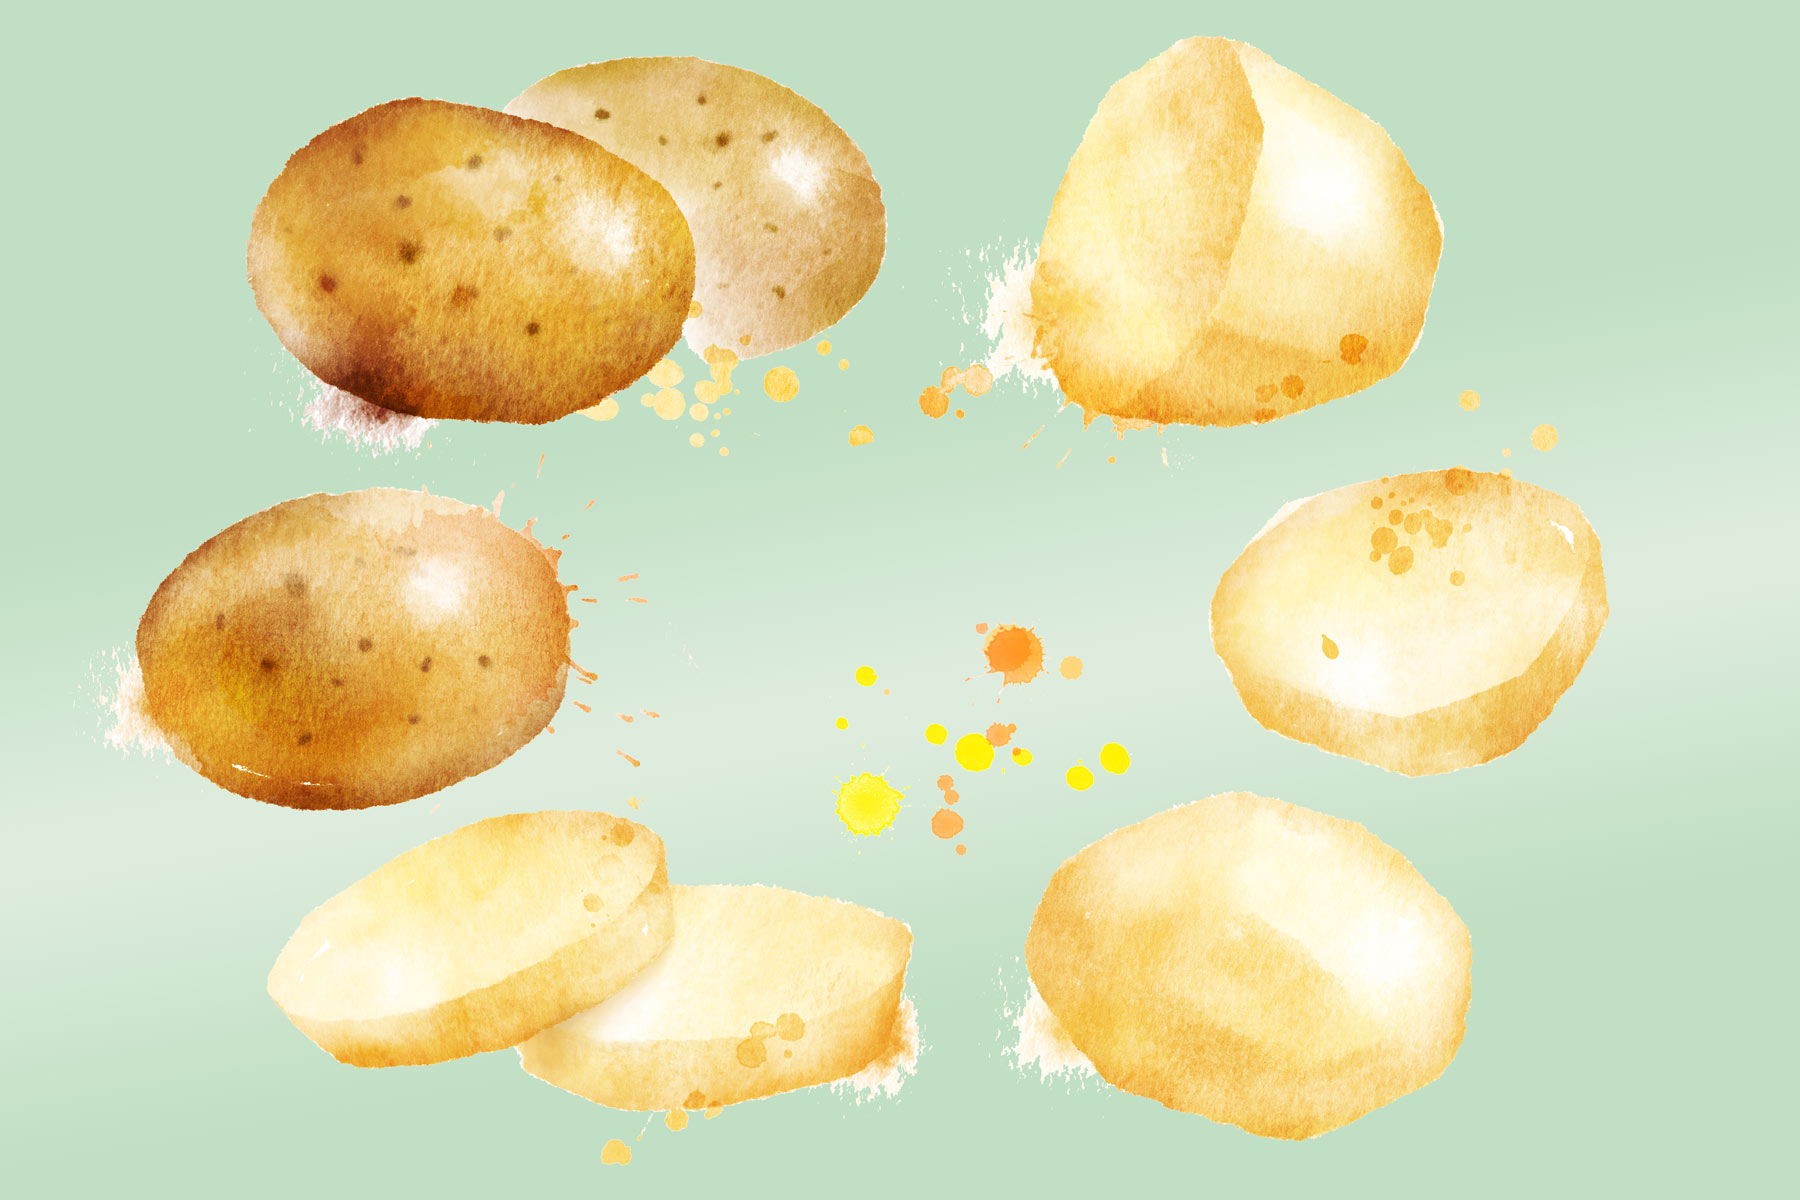 Крахмалистые овощи — картофель